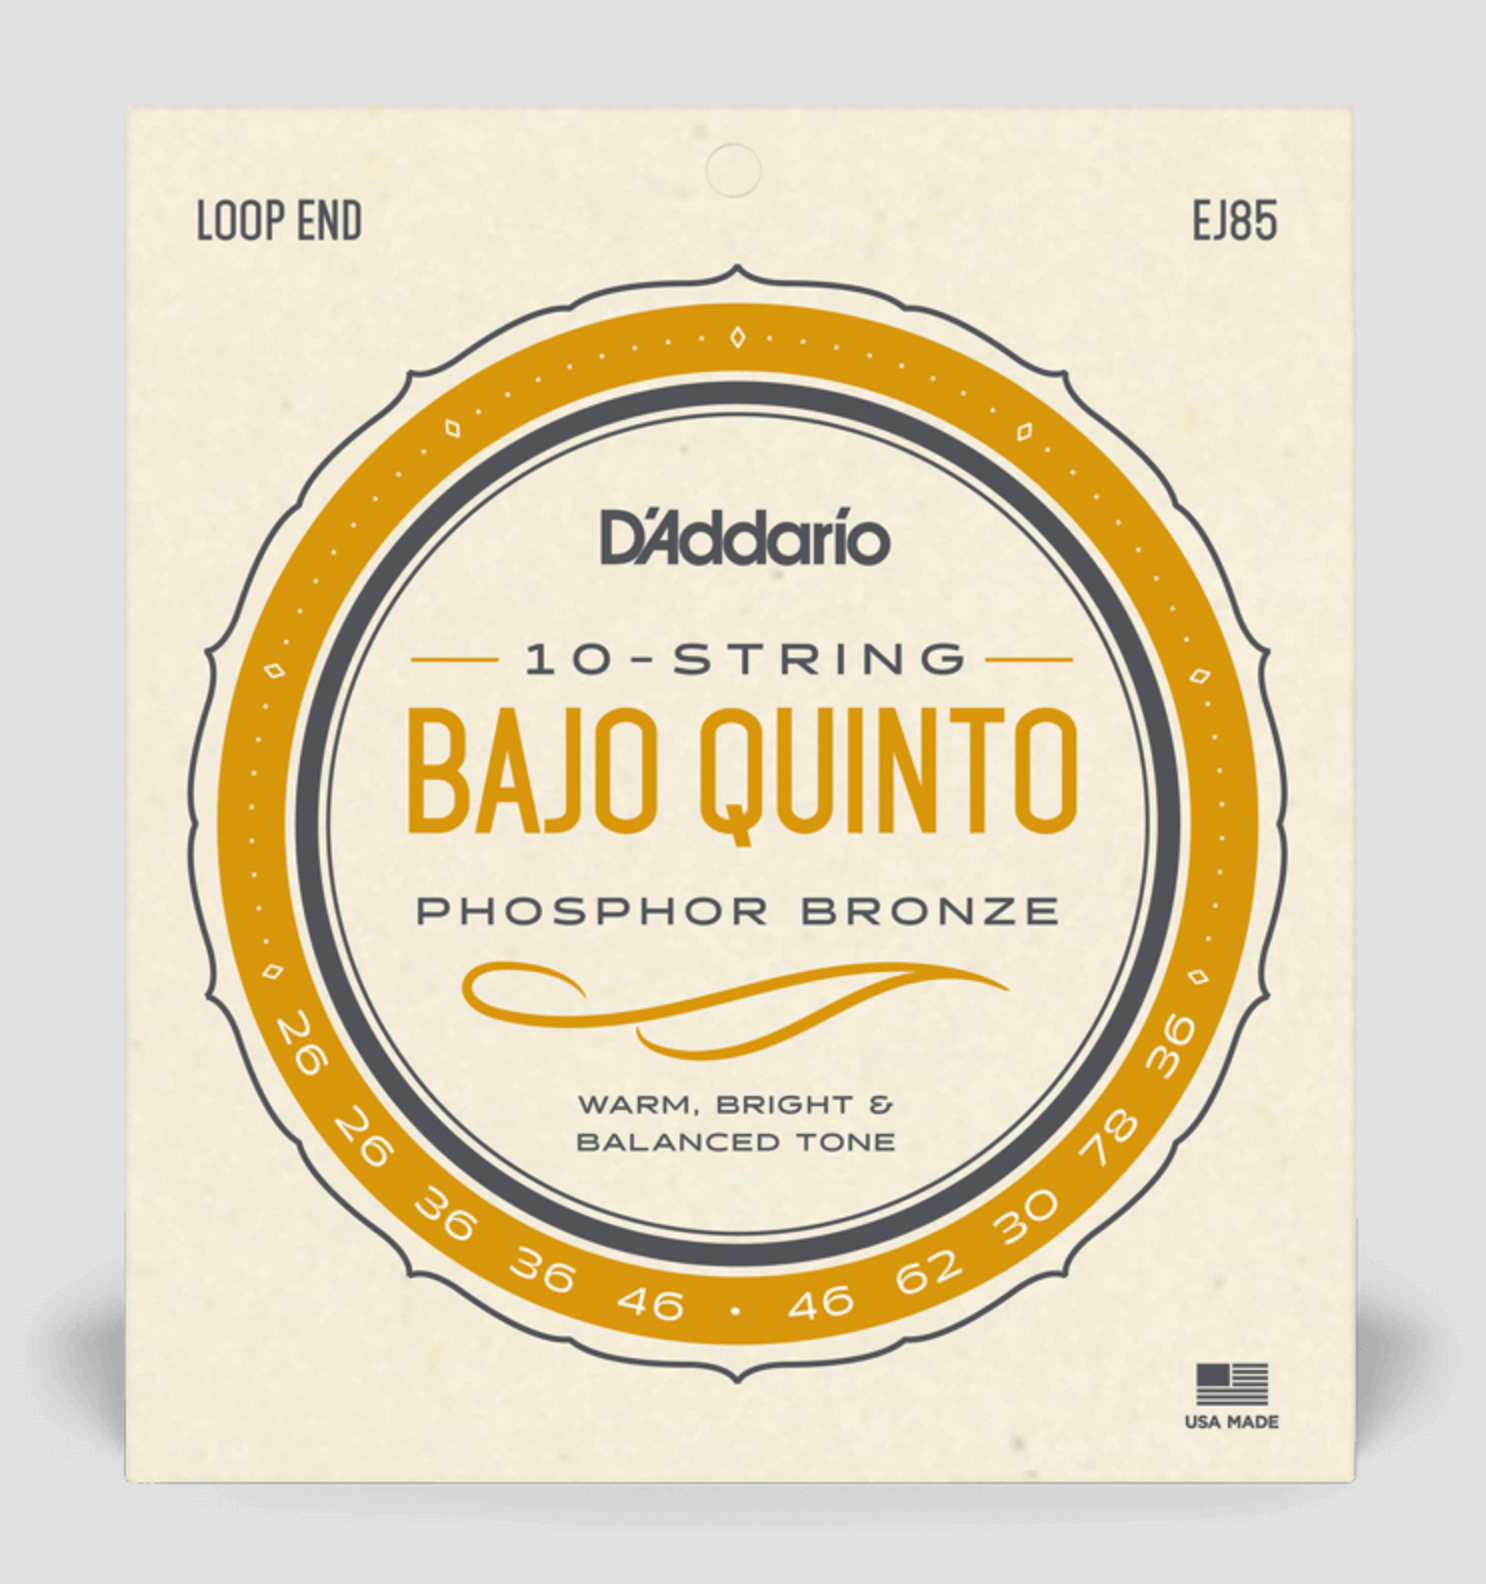 D'Addario Bajo Quinto Phosphor Bronze Strings (10-String)